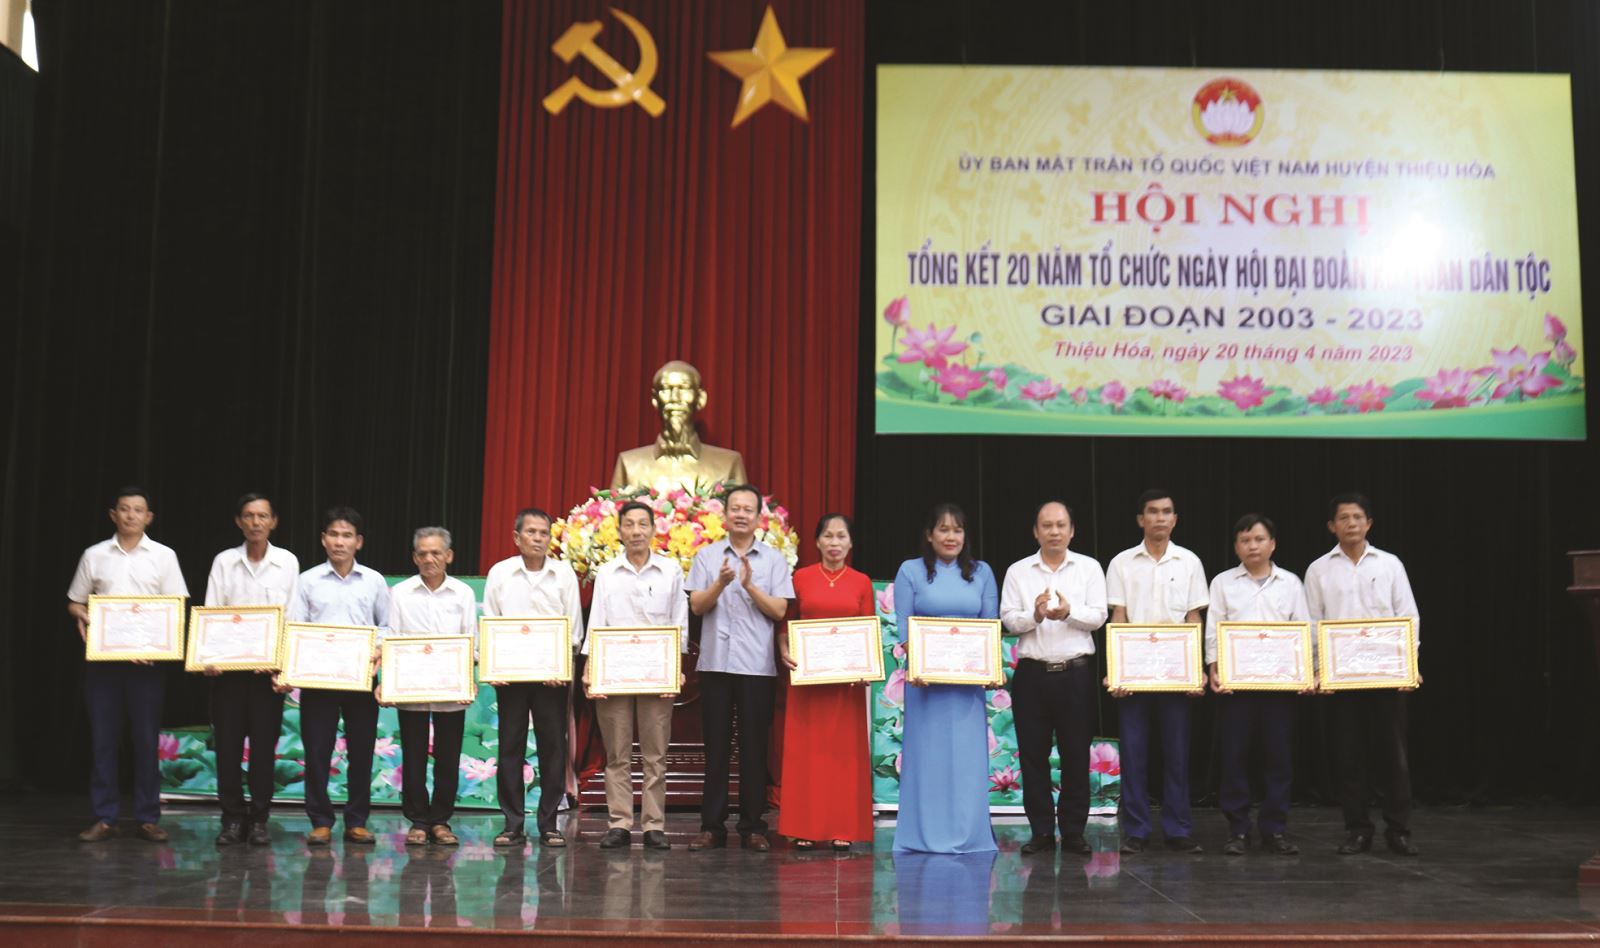 Huyện Thiệu Hóa (Thanh Hóa): Hiệu quả từ phong trào Toàn dân đoàn kết xây dựng đời sống văn hóa 